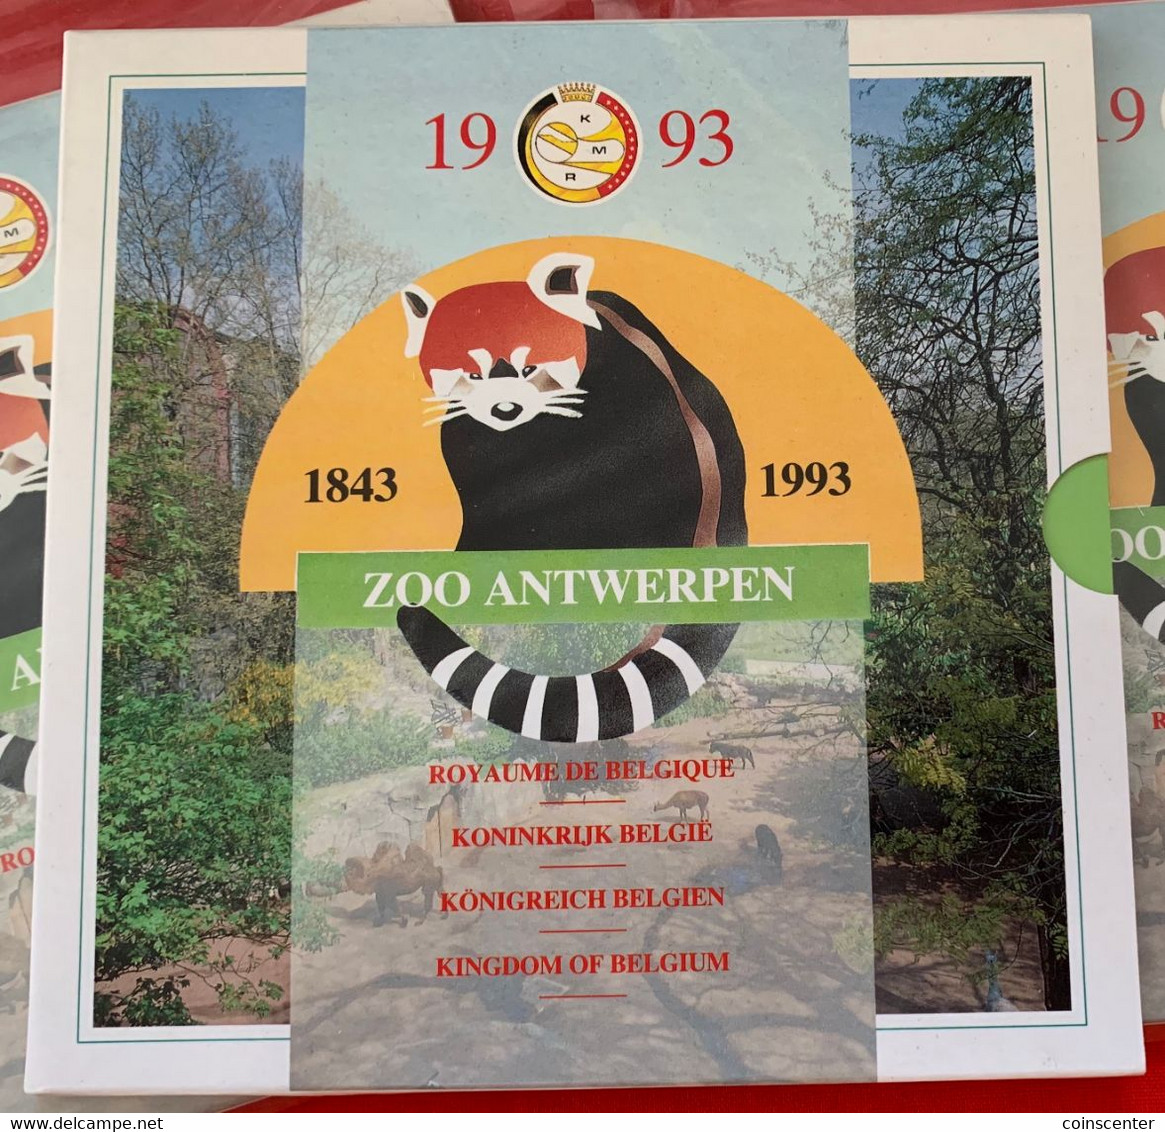 Belgium 1993 10 Coins Mint Set (+ Token) "Zoo Antwerpen" BU - FDC, BU, BE, Astucci E Ripiani